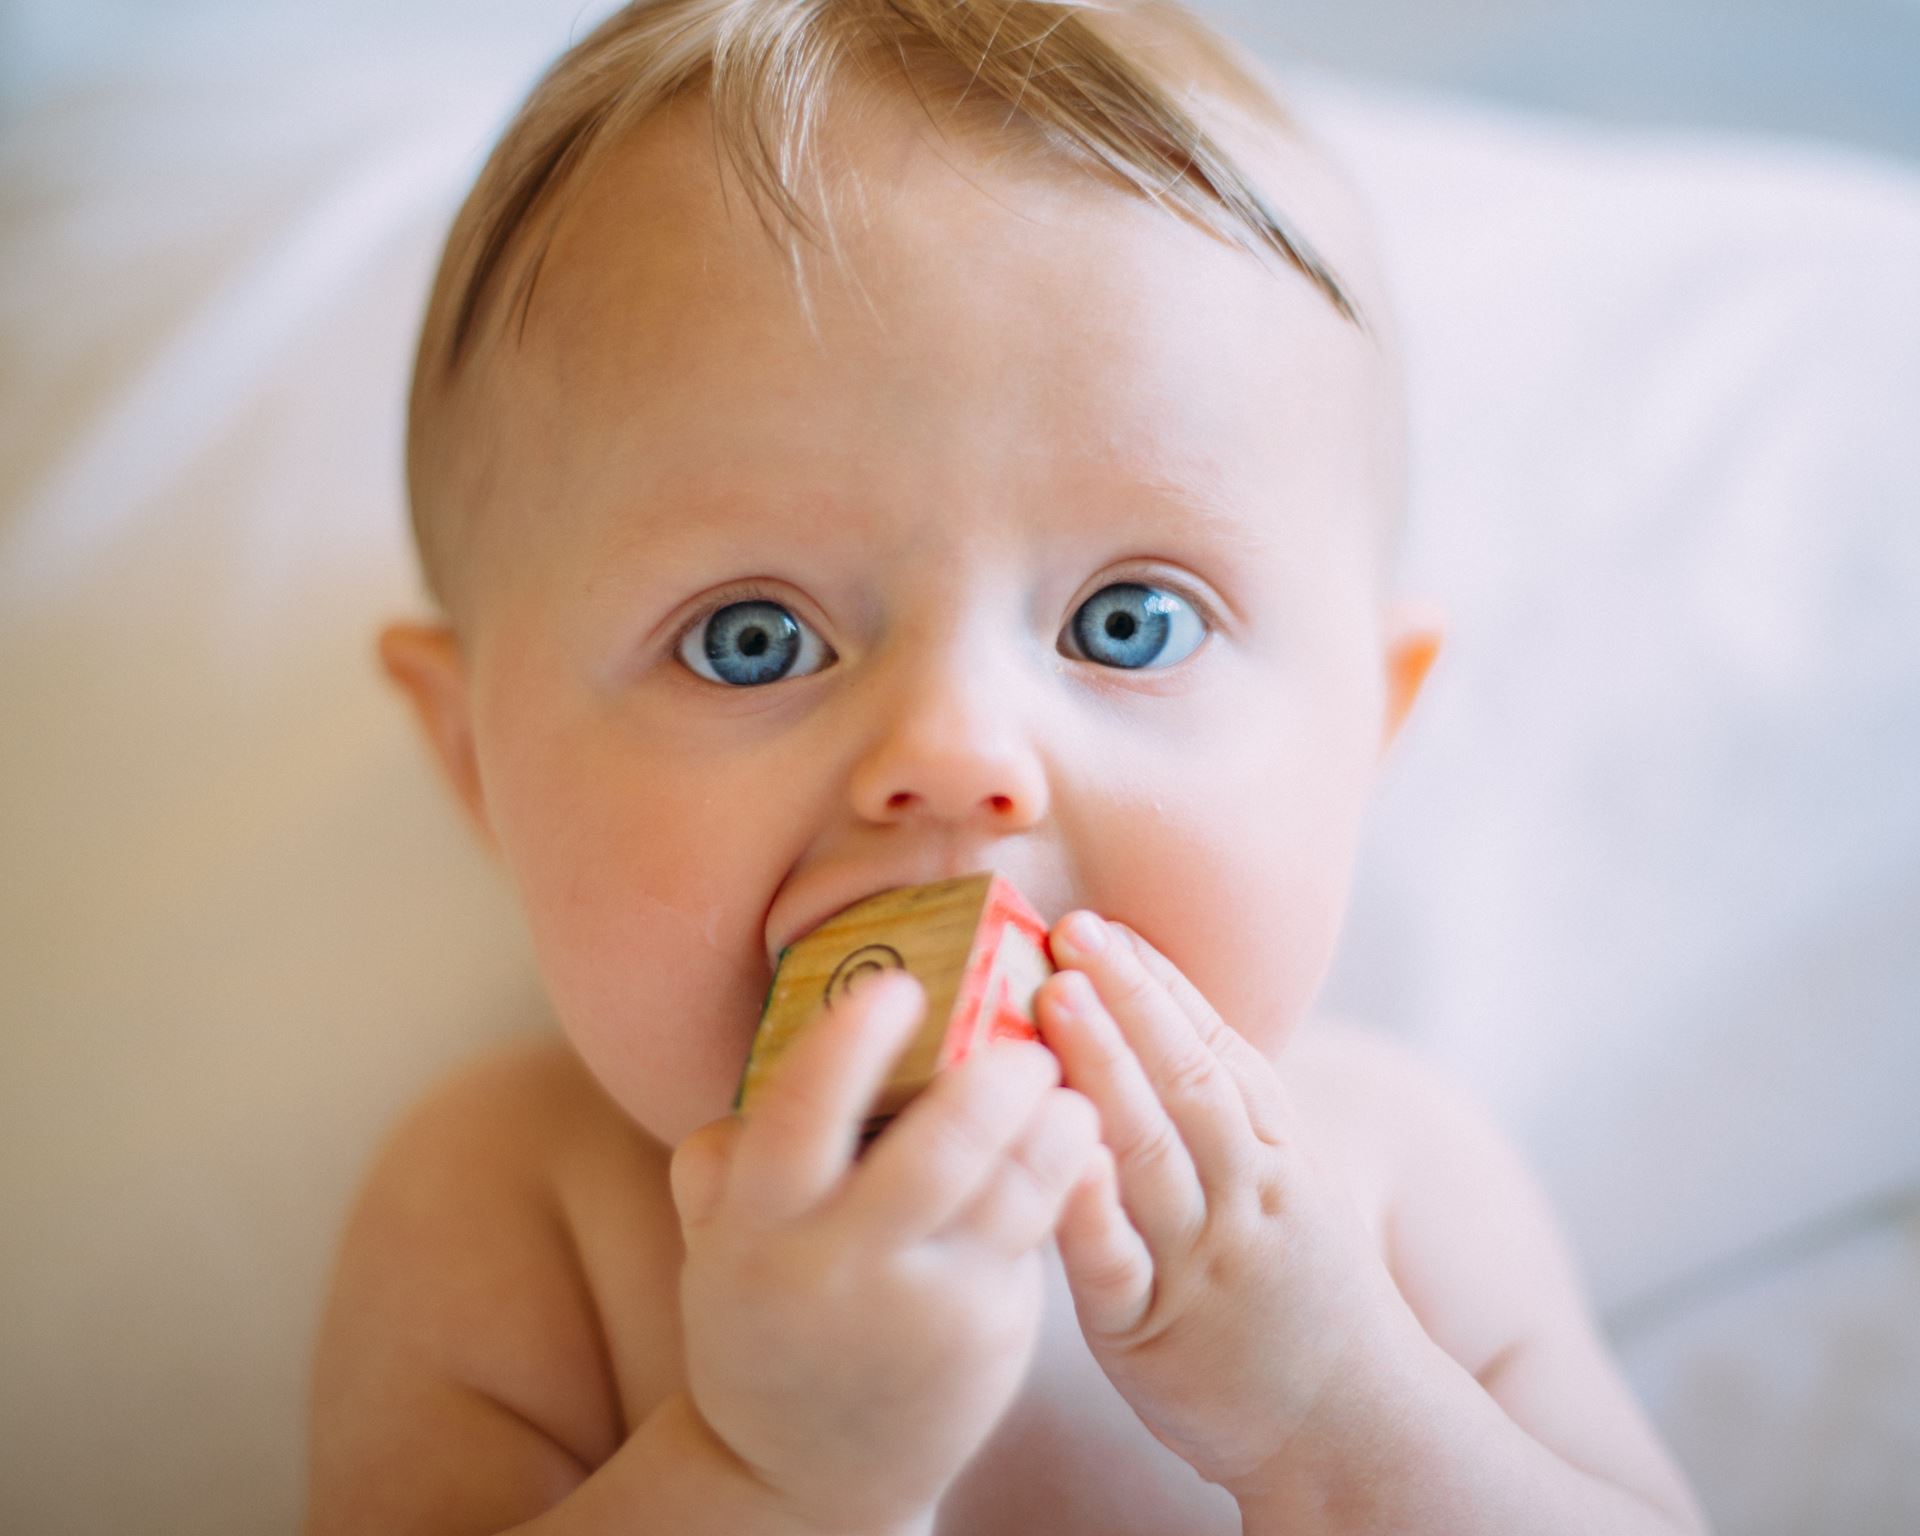 a young boy eating a banana